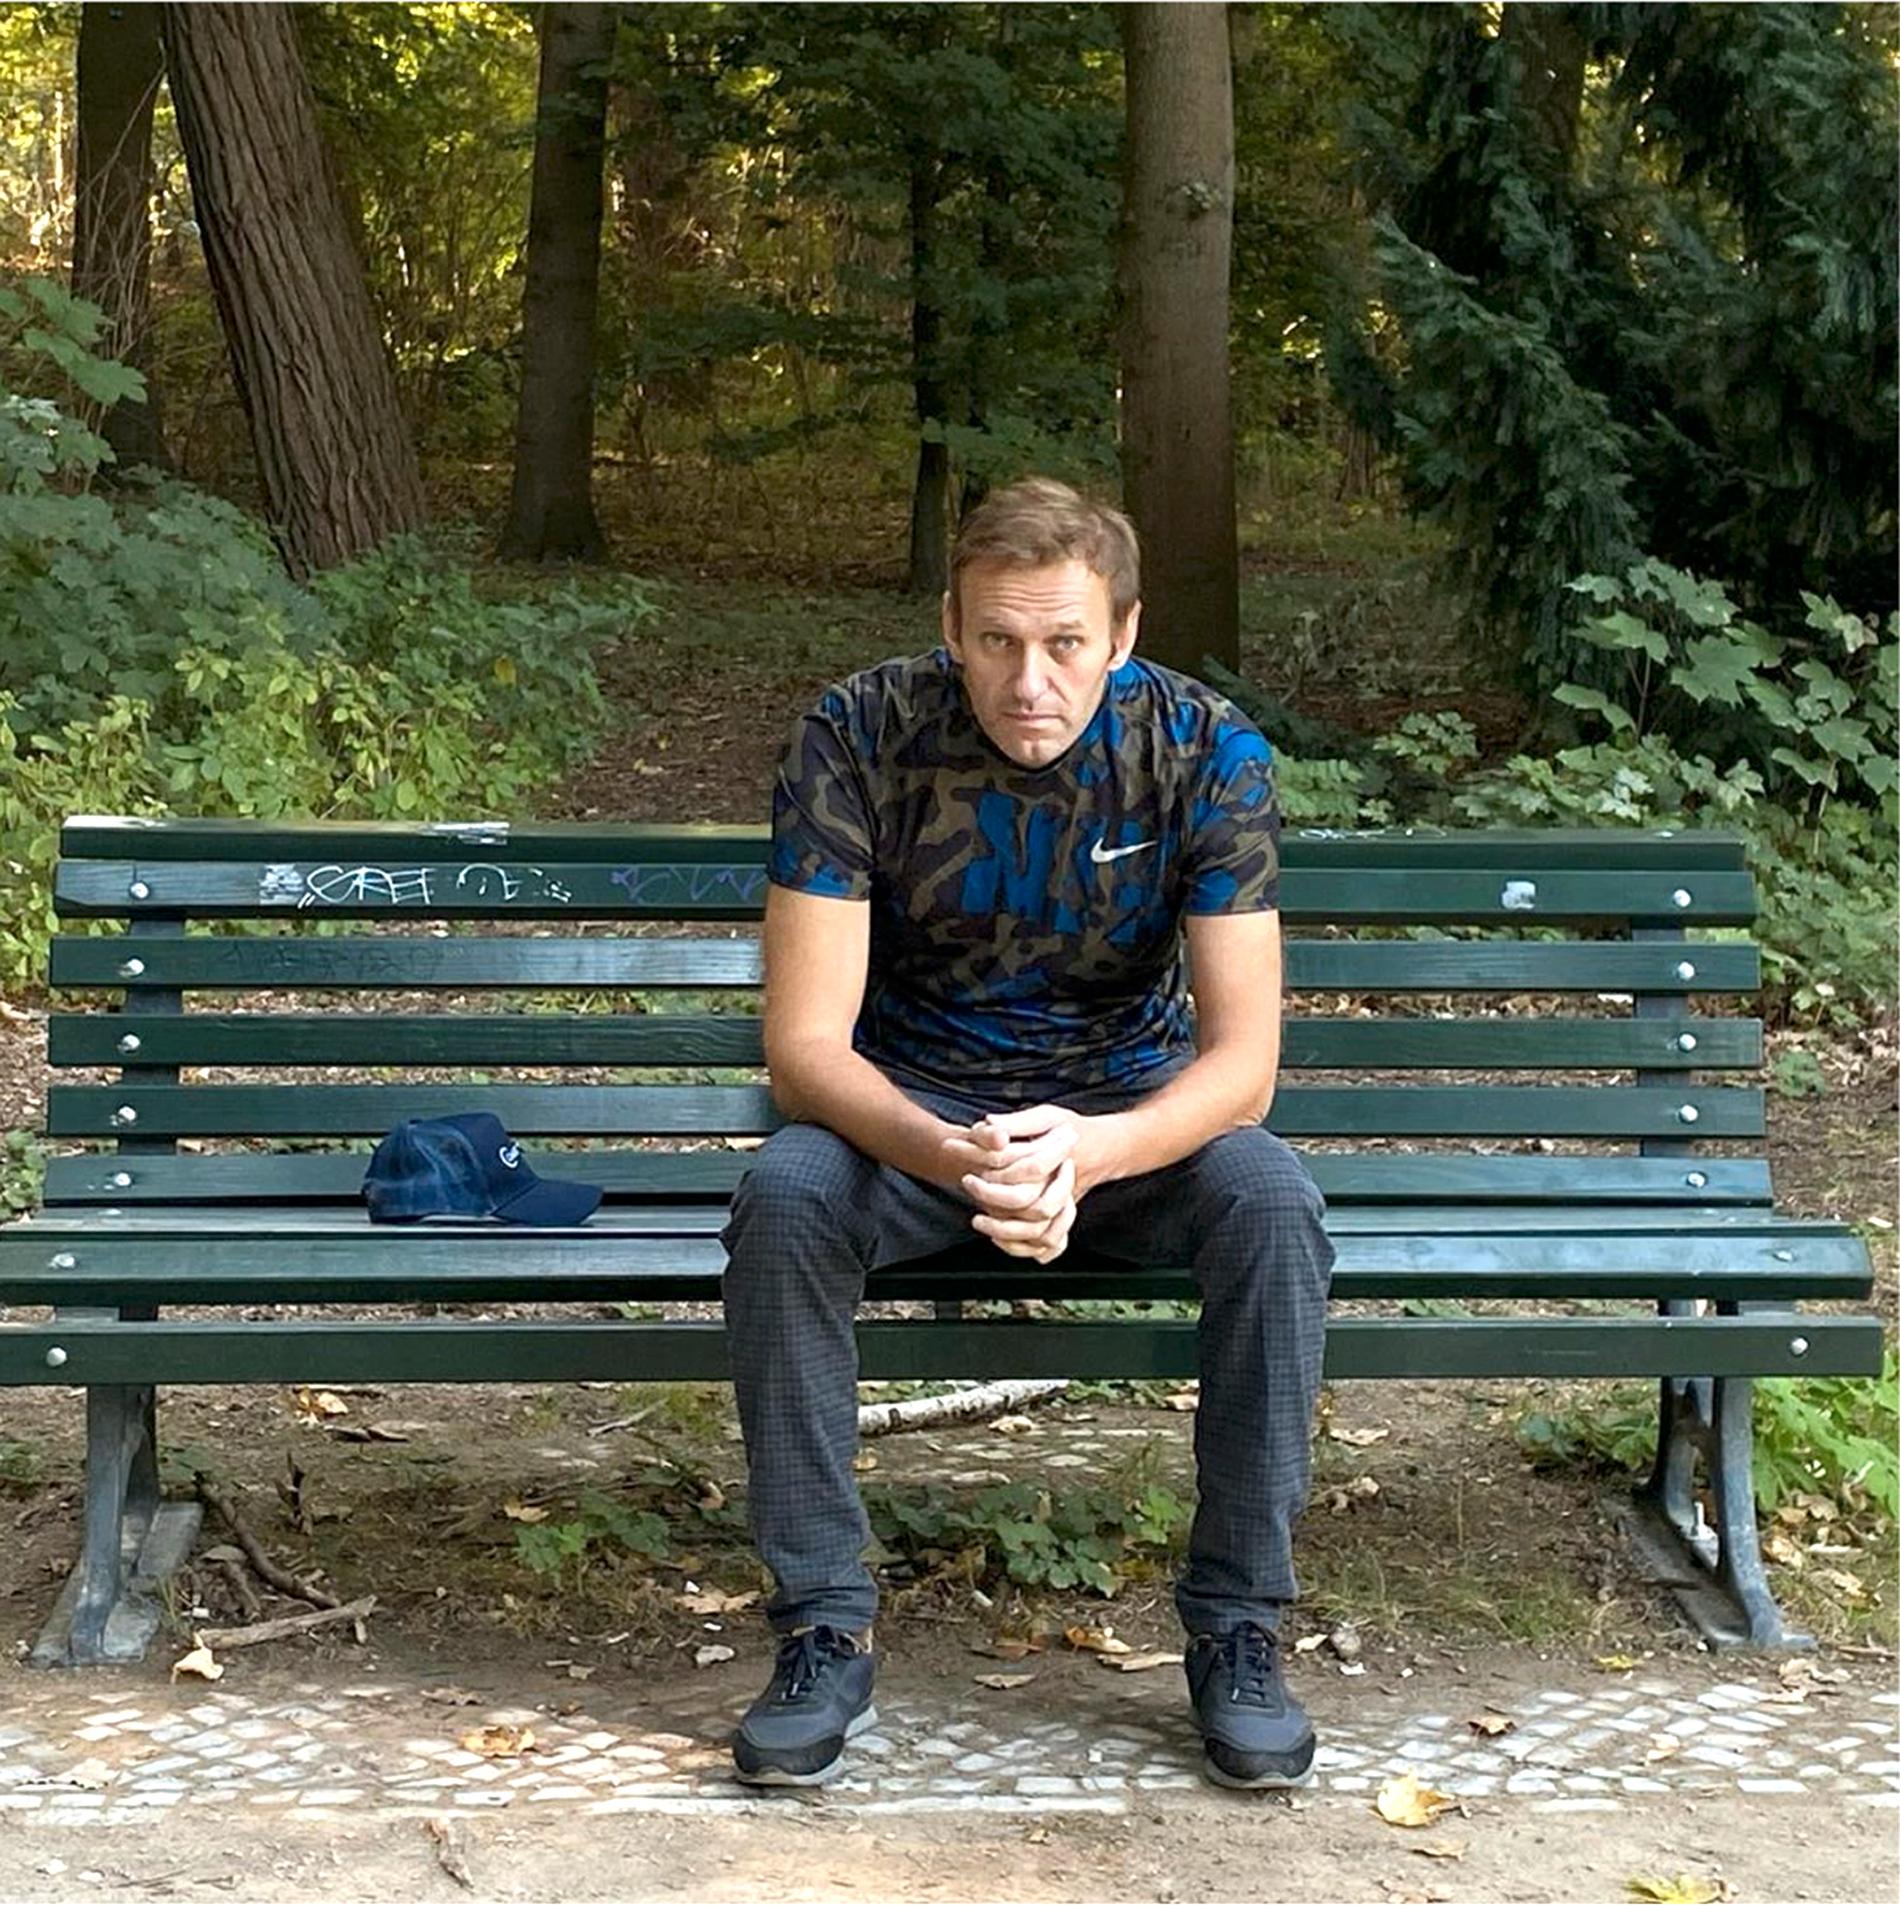 Ett foto utlagt av Aleksej Navalnyj på Instagram den 23 september.